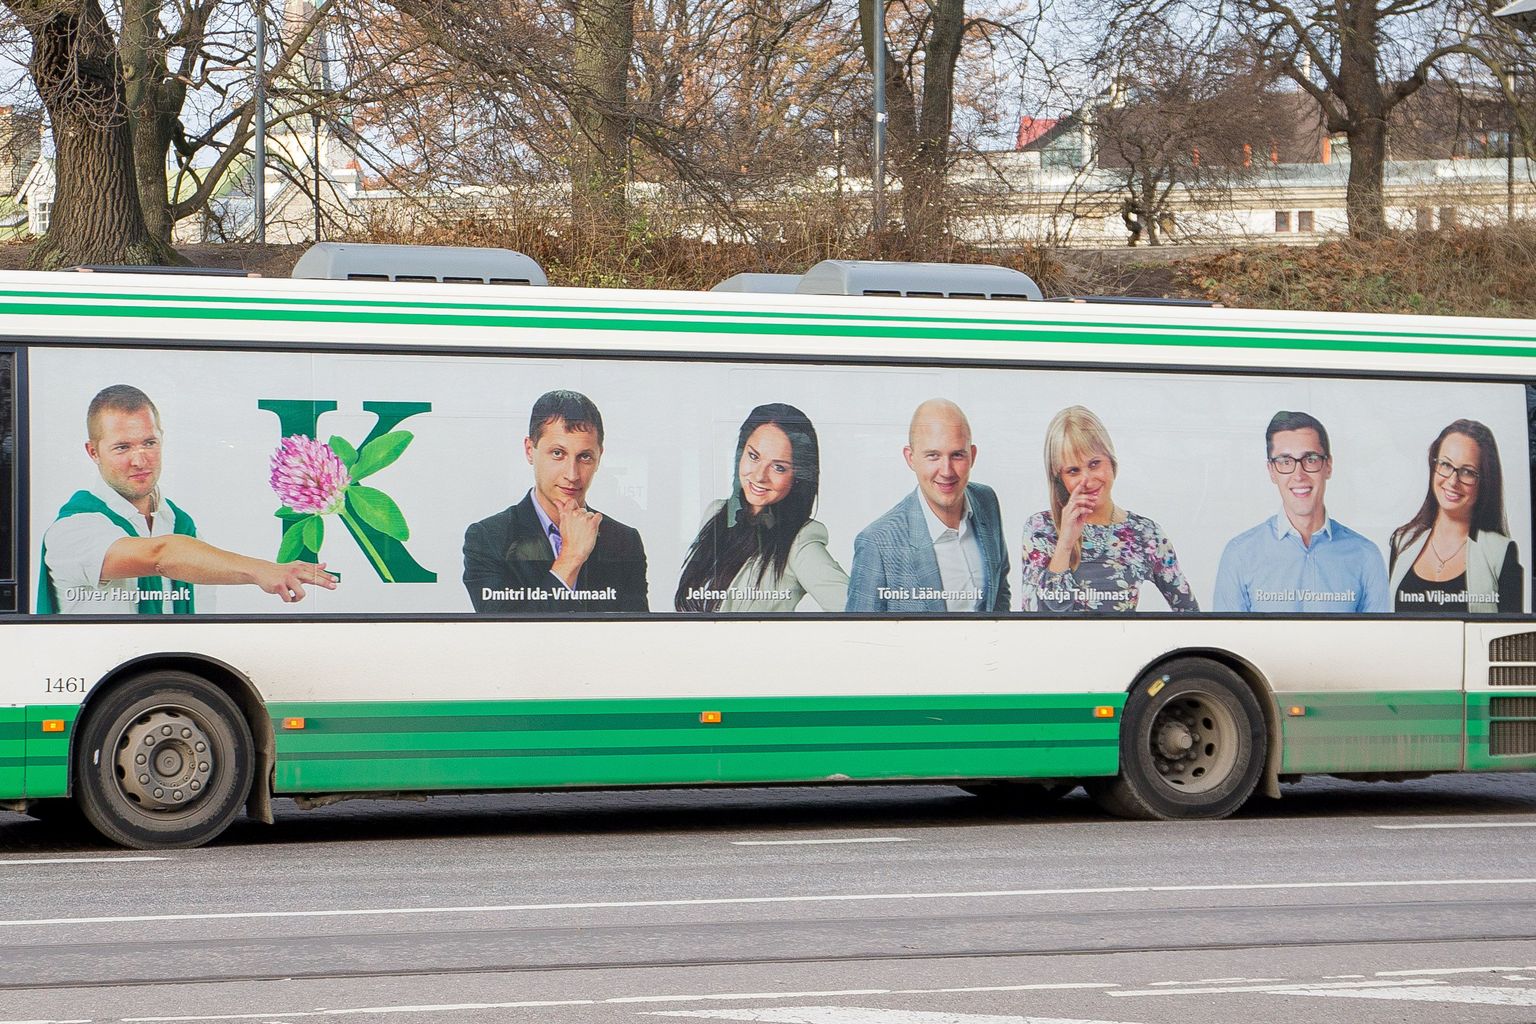 Keskerakonna noortekogu reklaam Tallinna liinibussil.